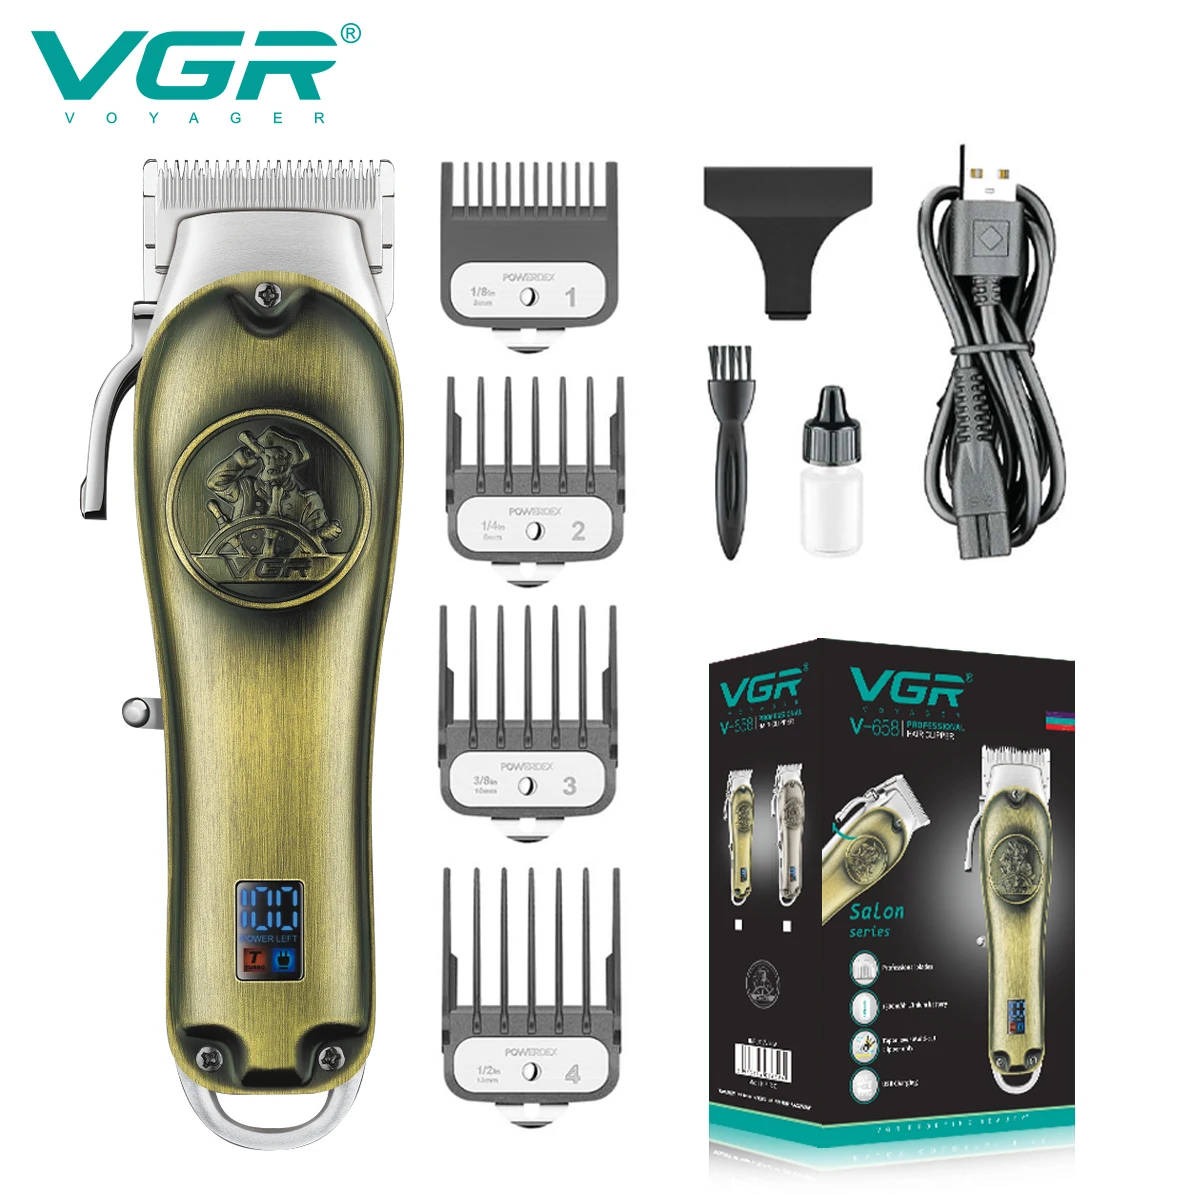 VGR שיער גוזם שיער מקצועי קליפר מתכת מכונת תספורת אלחוטית נטענת מתכוונן גוזם שיער לגברים V-658 - 0